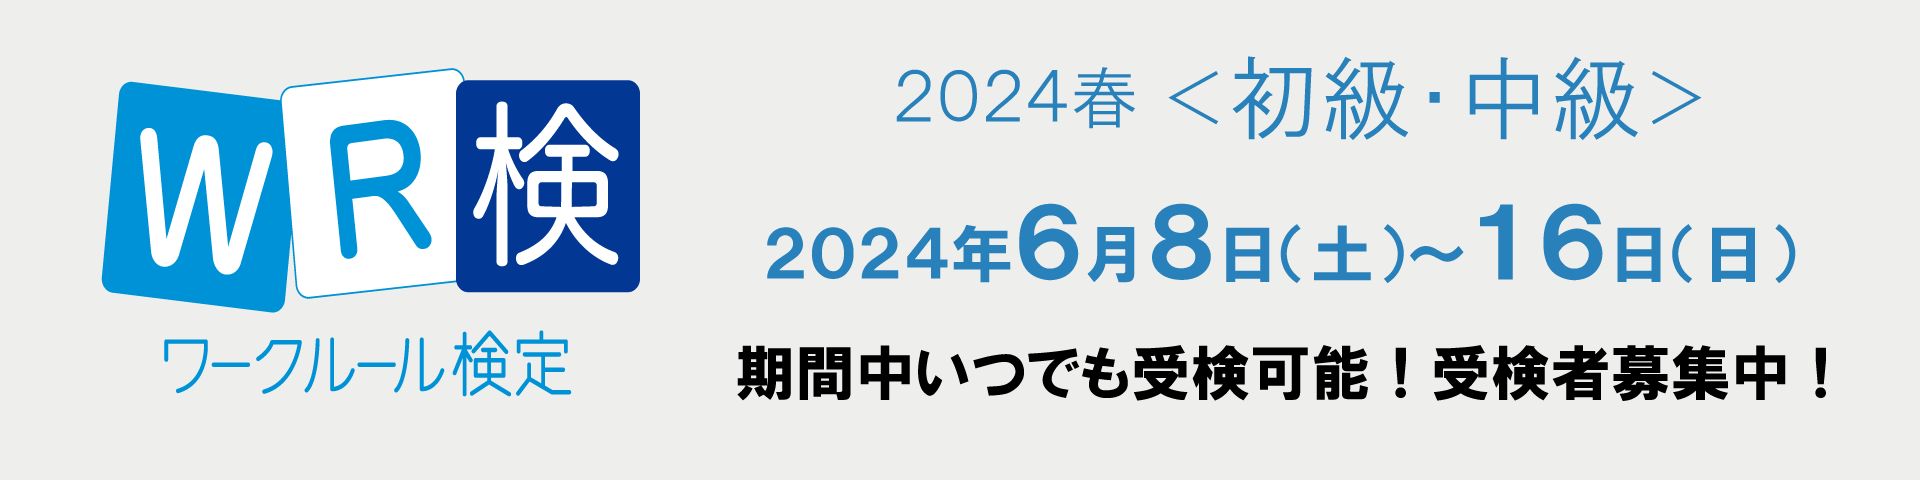 連合滋賀,ワークルール検定,2024春